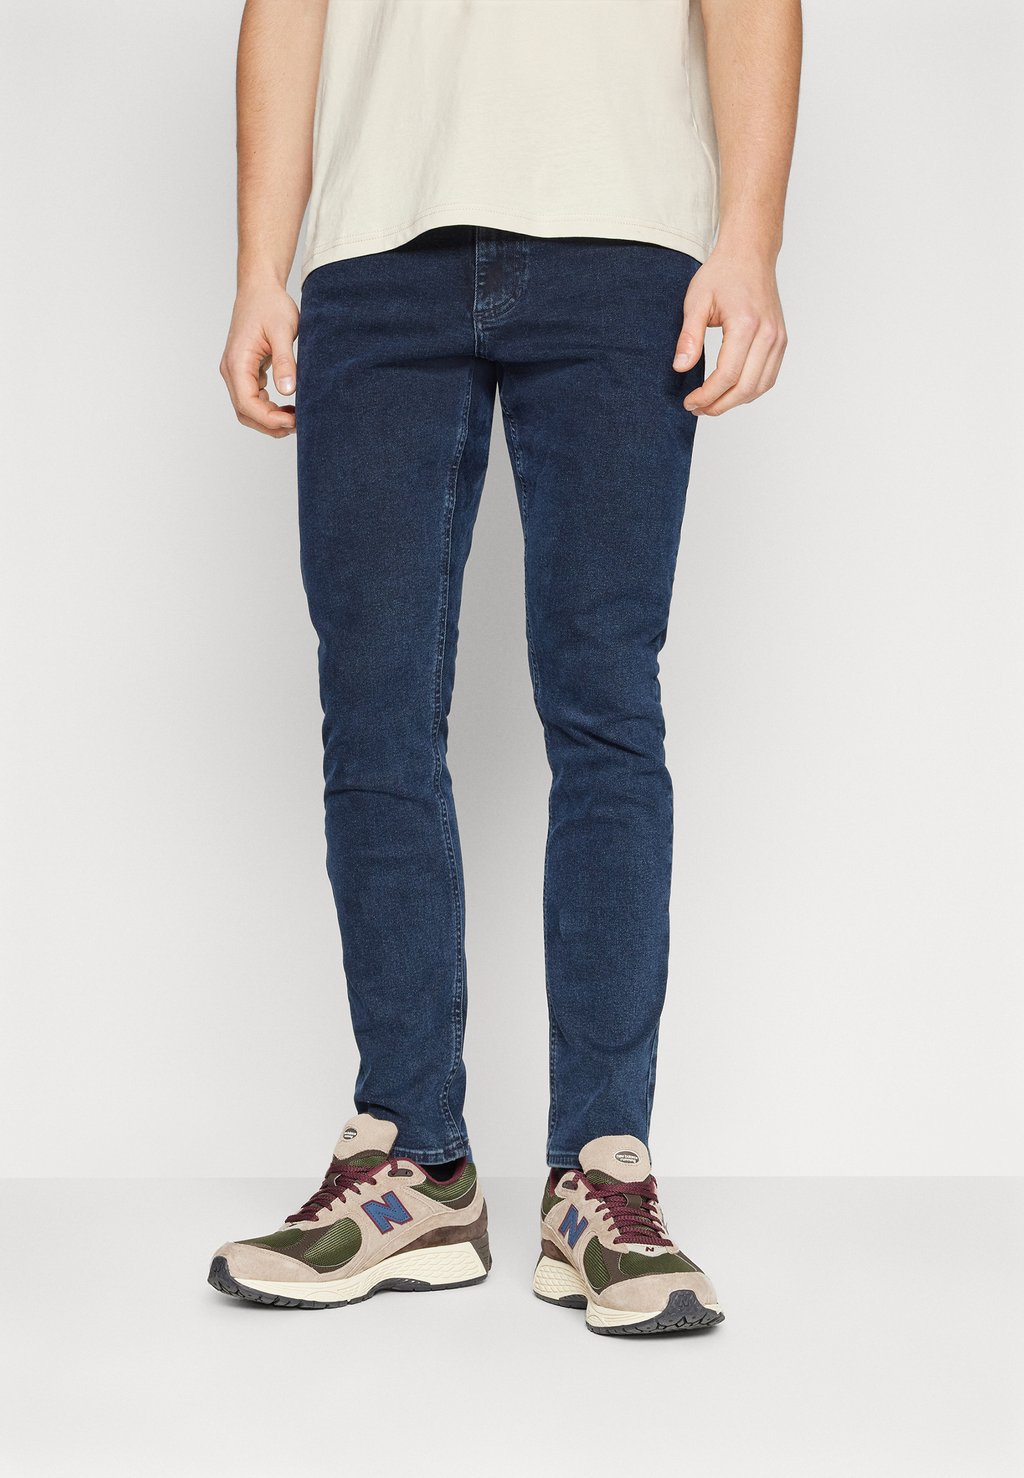 Джинсы Skinny Fit Scanton Tommy Jeans, цвет denim dark джинсы клеш skinny fit fade pepe jeans цвет dark blue denim